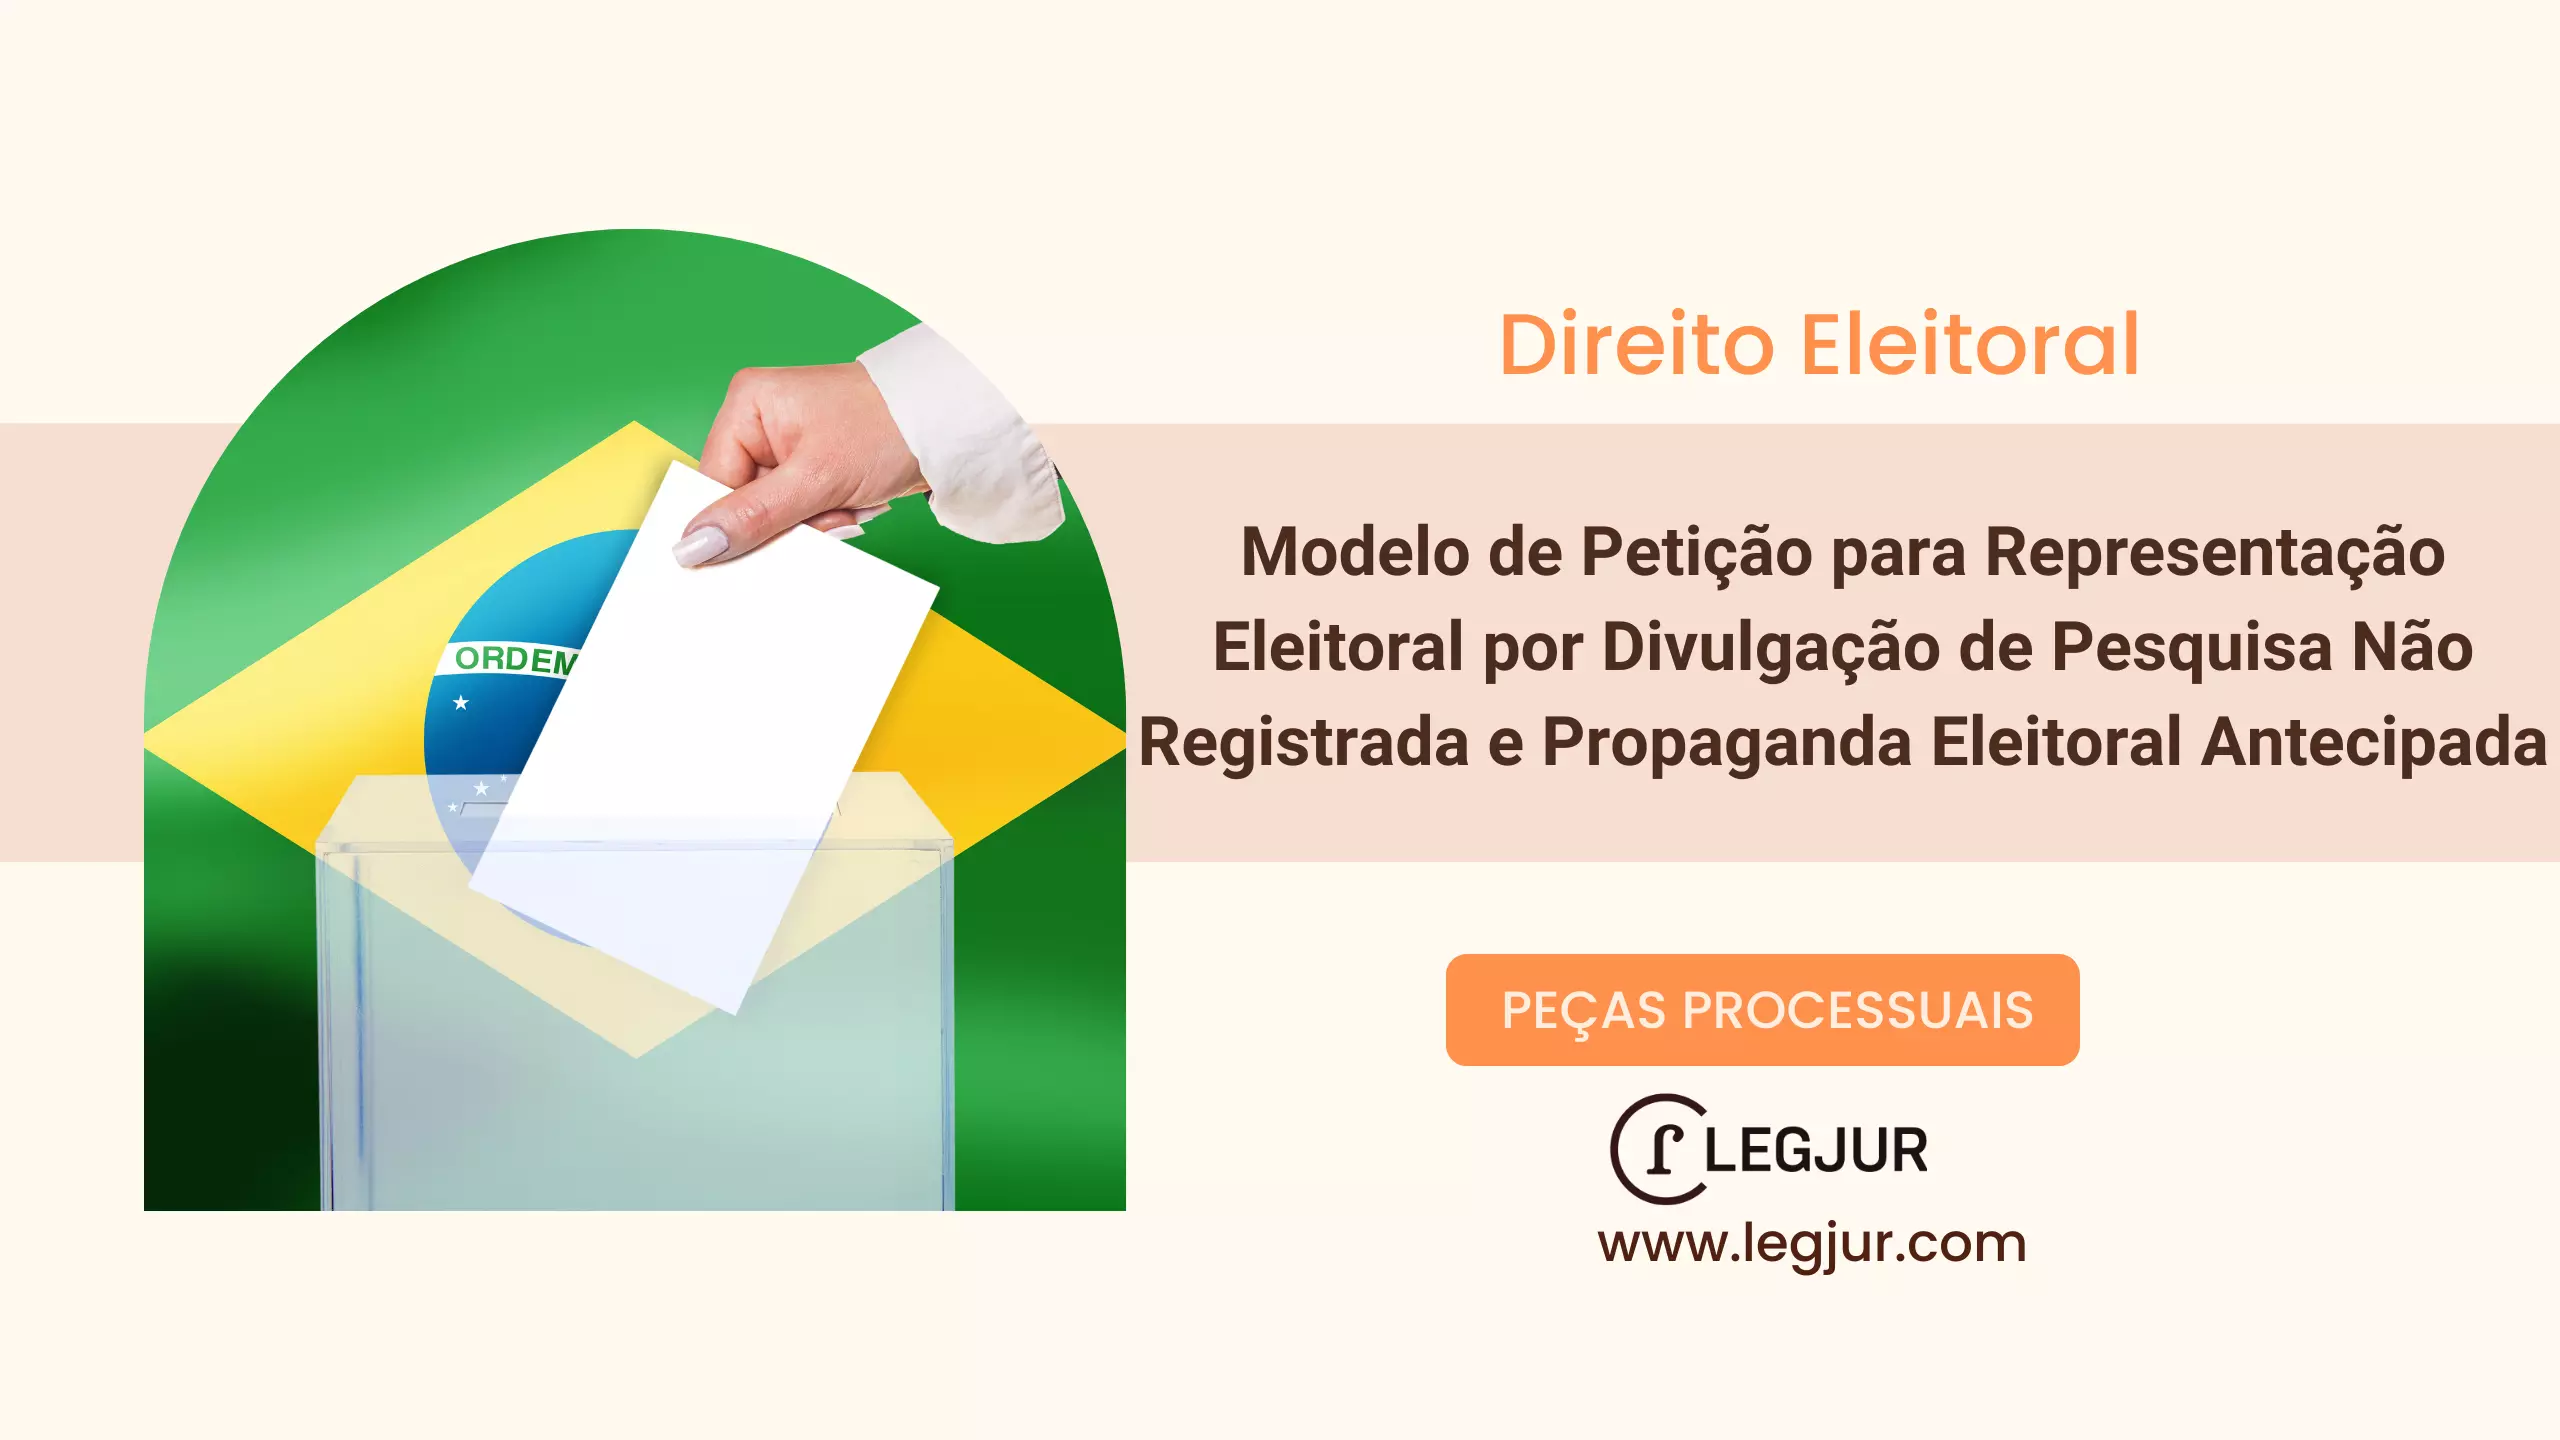 Modelo de Petição para Representação Eleitoral por Divulgação de Pesquisa Não Registrada e Propaganda Eleitoral Antecipada